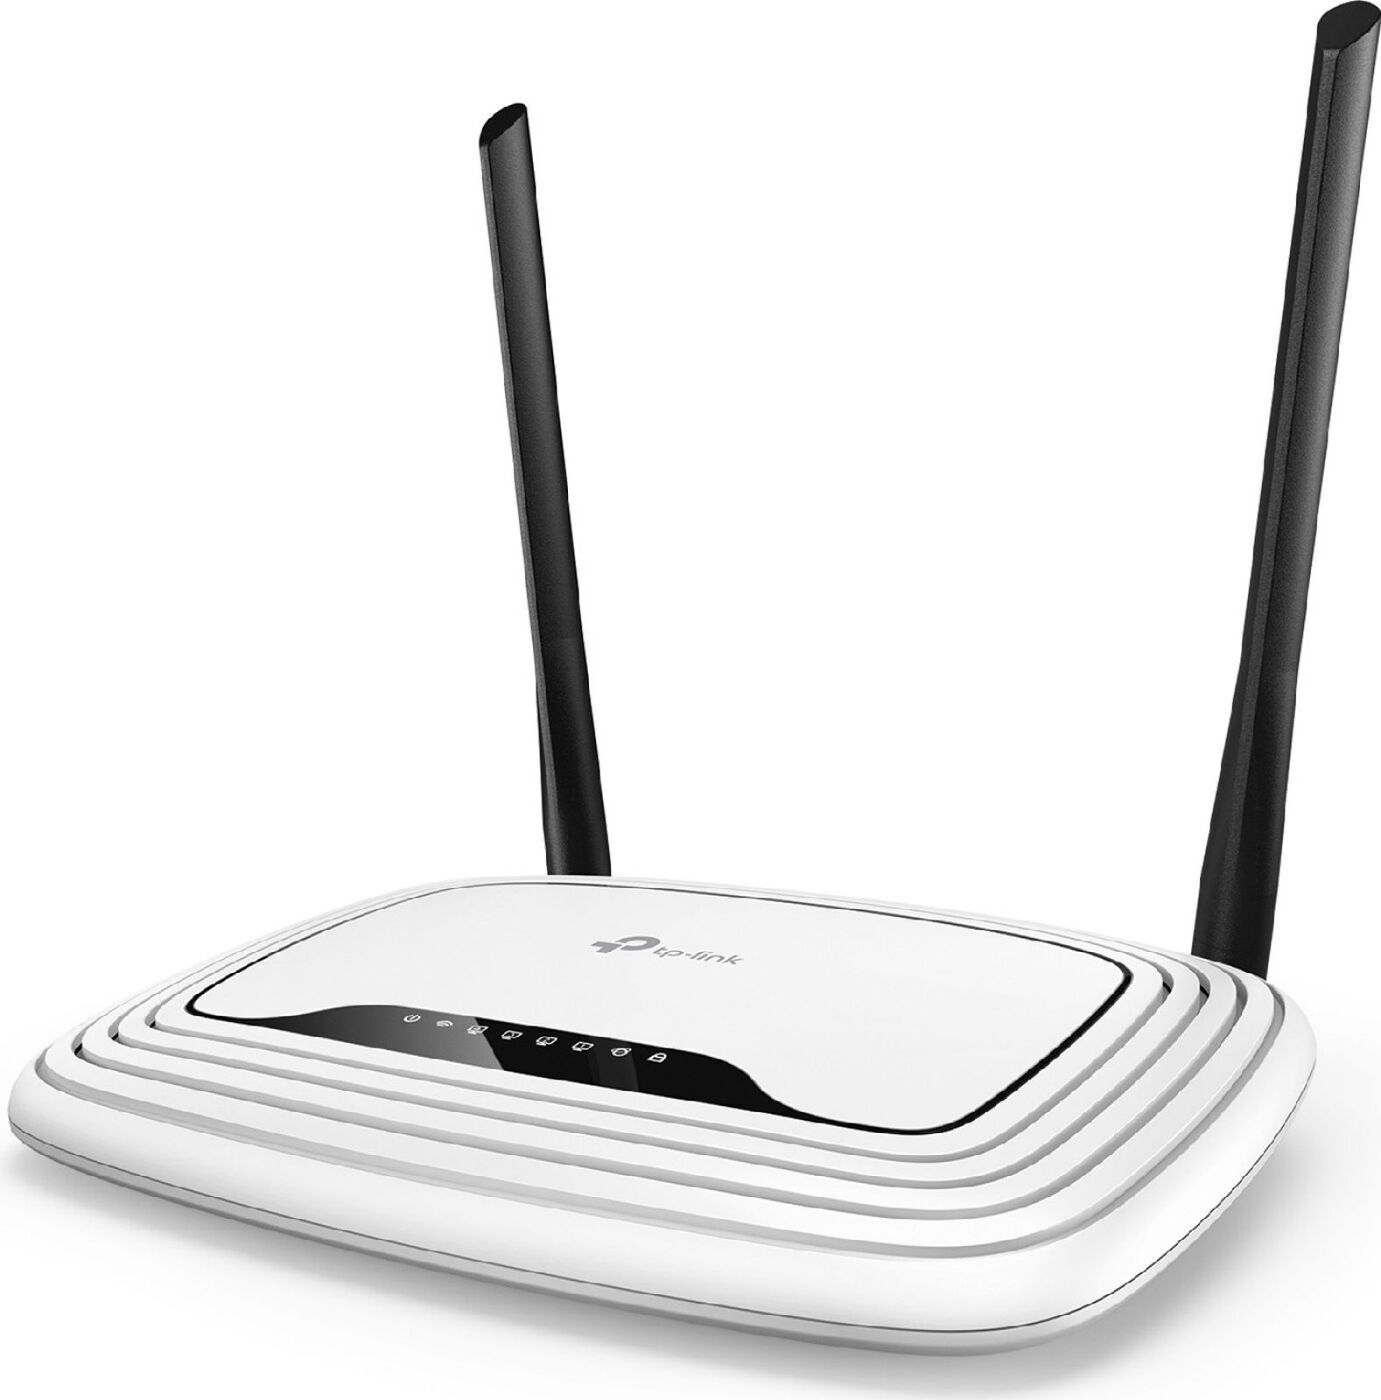 Купить хороший роутер wifi для дома мощный. Wi-Fi роутер TP-link TL-wr841n, n300. TP-link TL-wr841n. Wi-Fi роутер TP-link TL-wr842n. TP-link Wireless n Router wr841n.